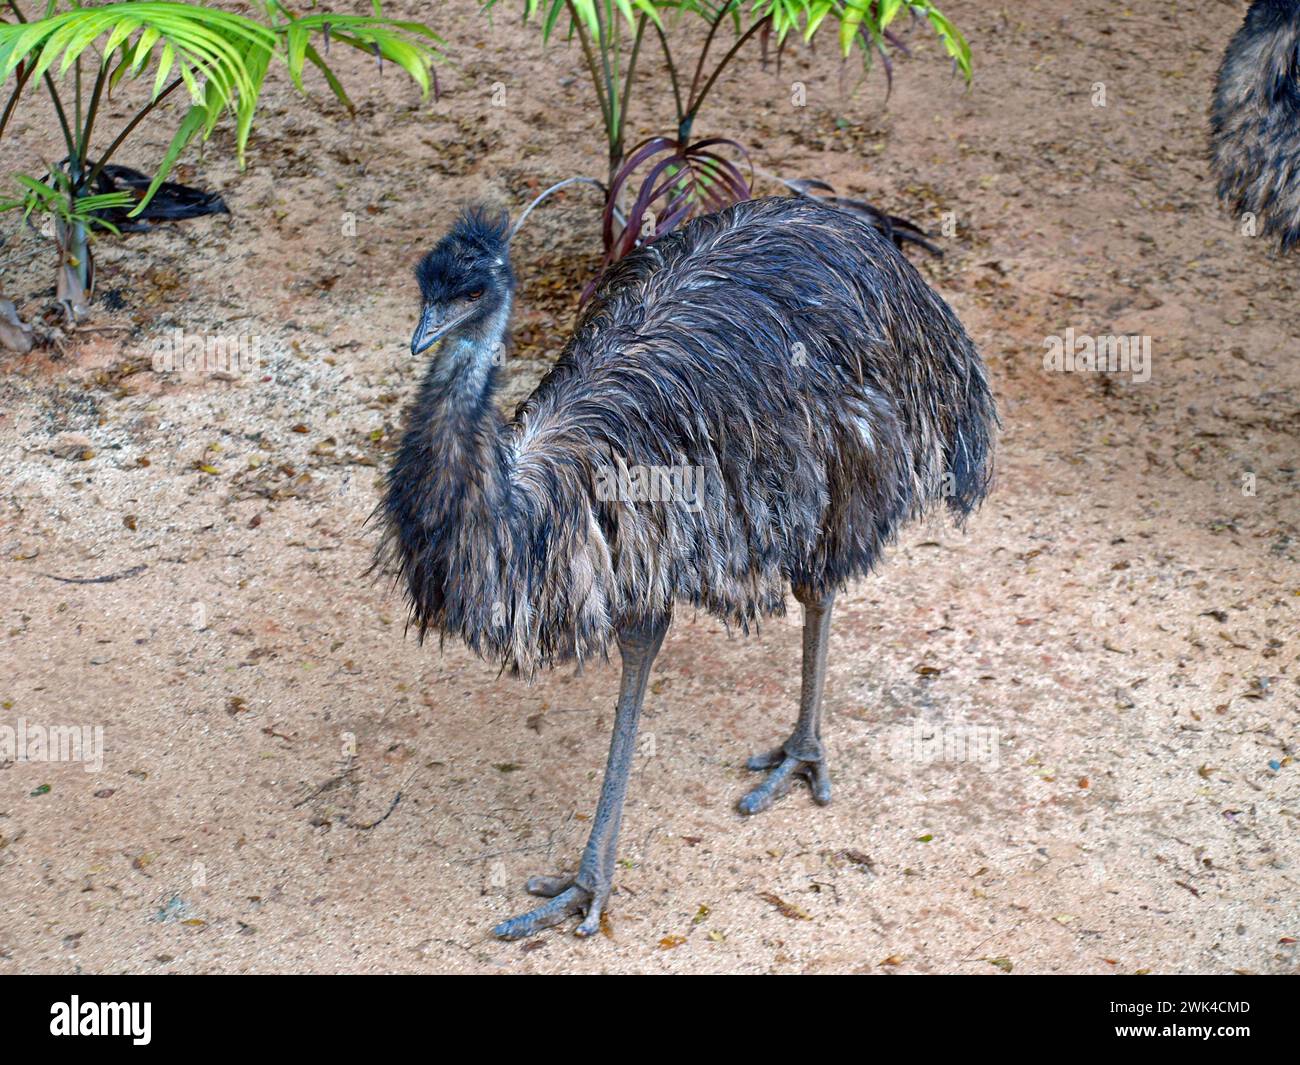 EMU (Dromaius novaehollandiae). Das ist der zweithöchste lebende Vogel nach dem Strauß. Australischer Vogel. Stockfoto